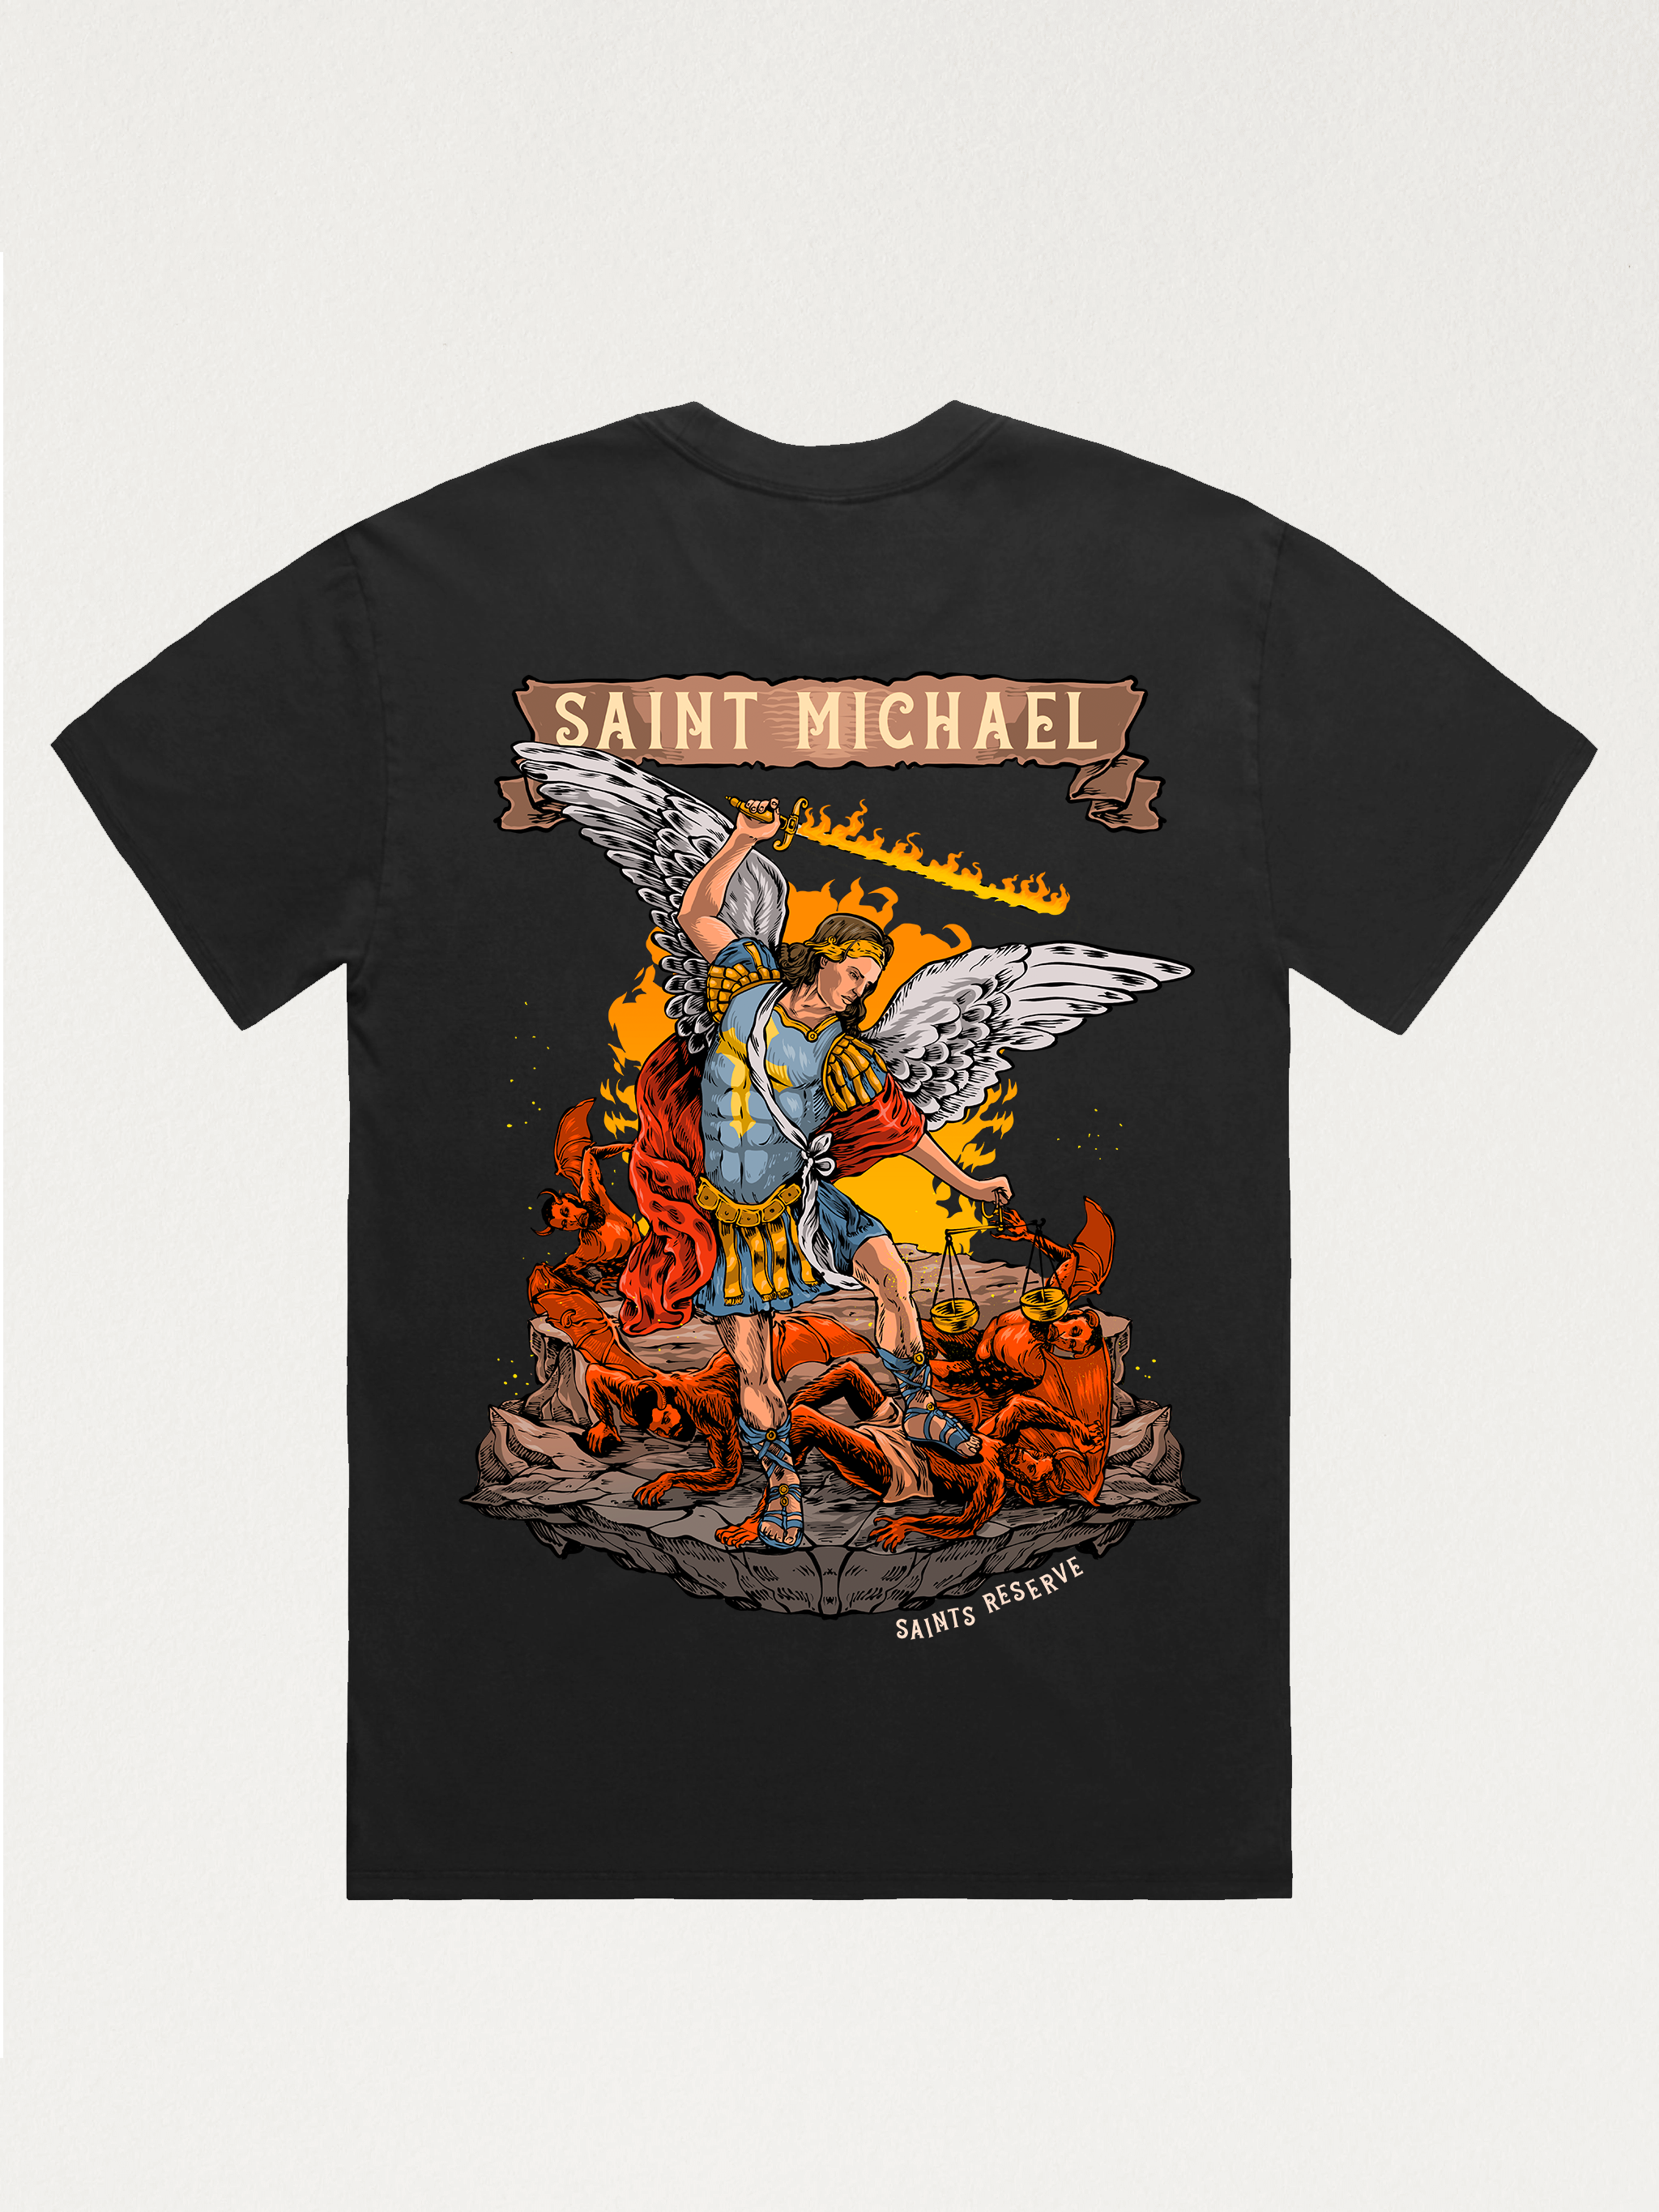 Saint Gabriel the Archangel Shirt – Saints Reserve